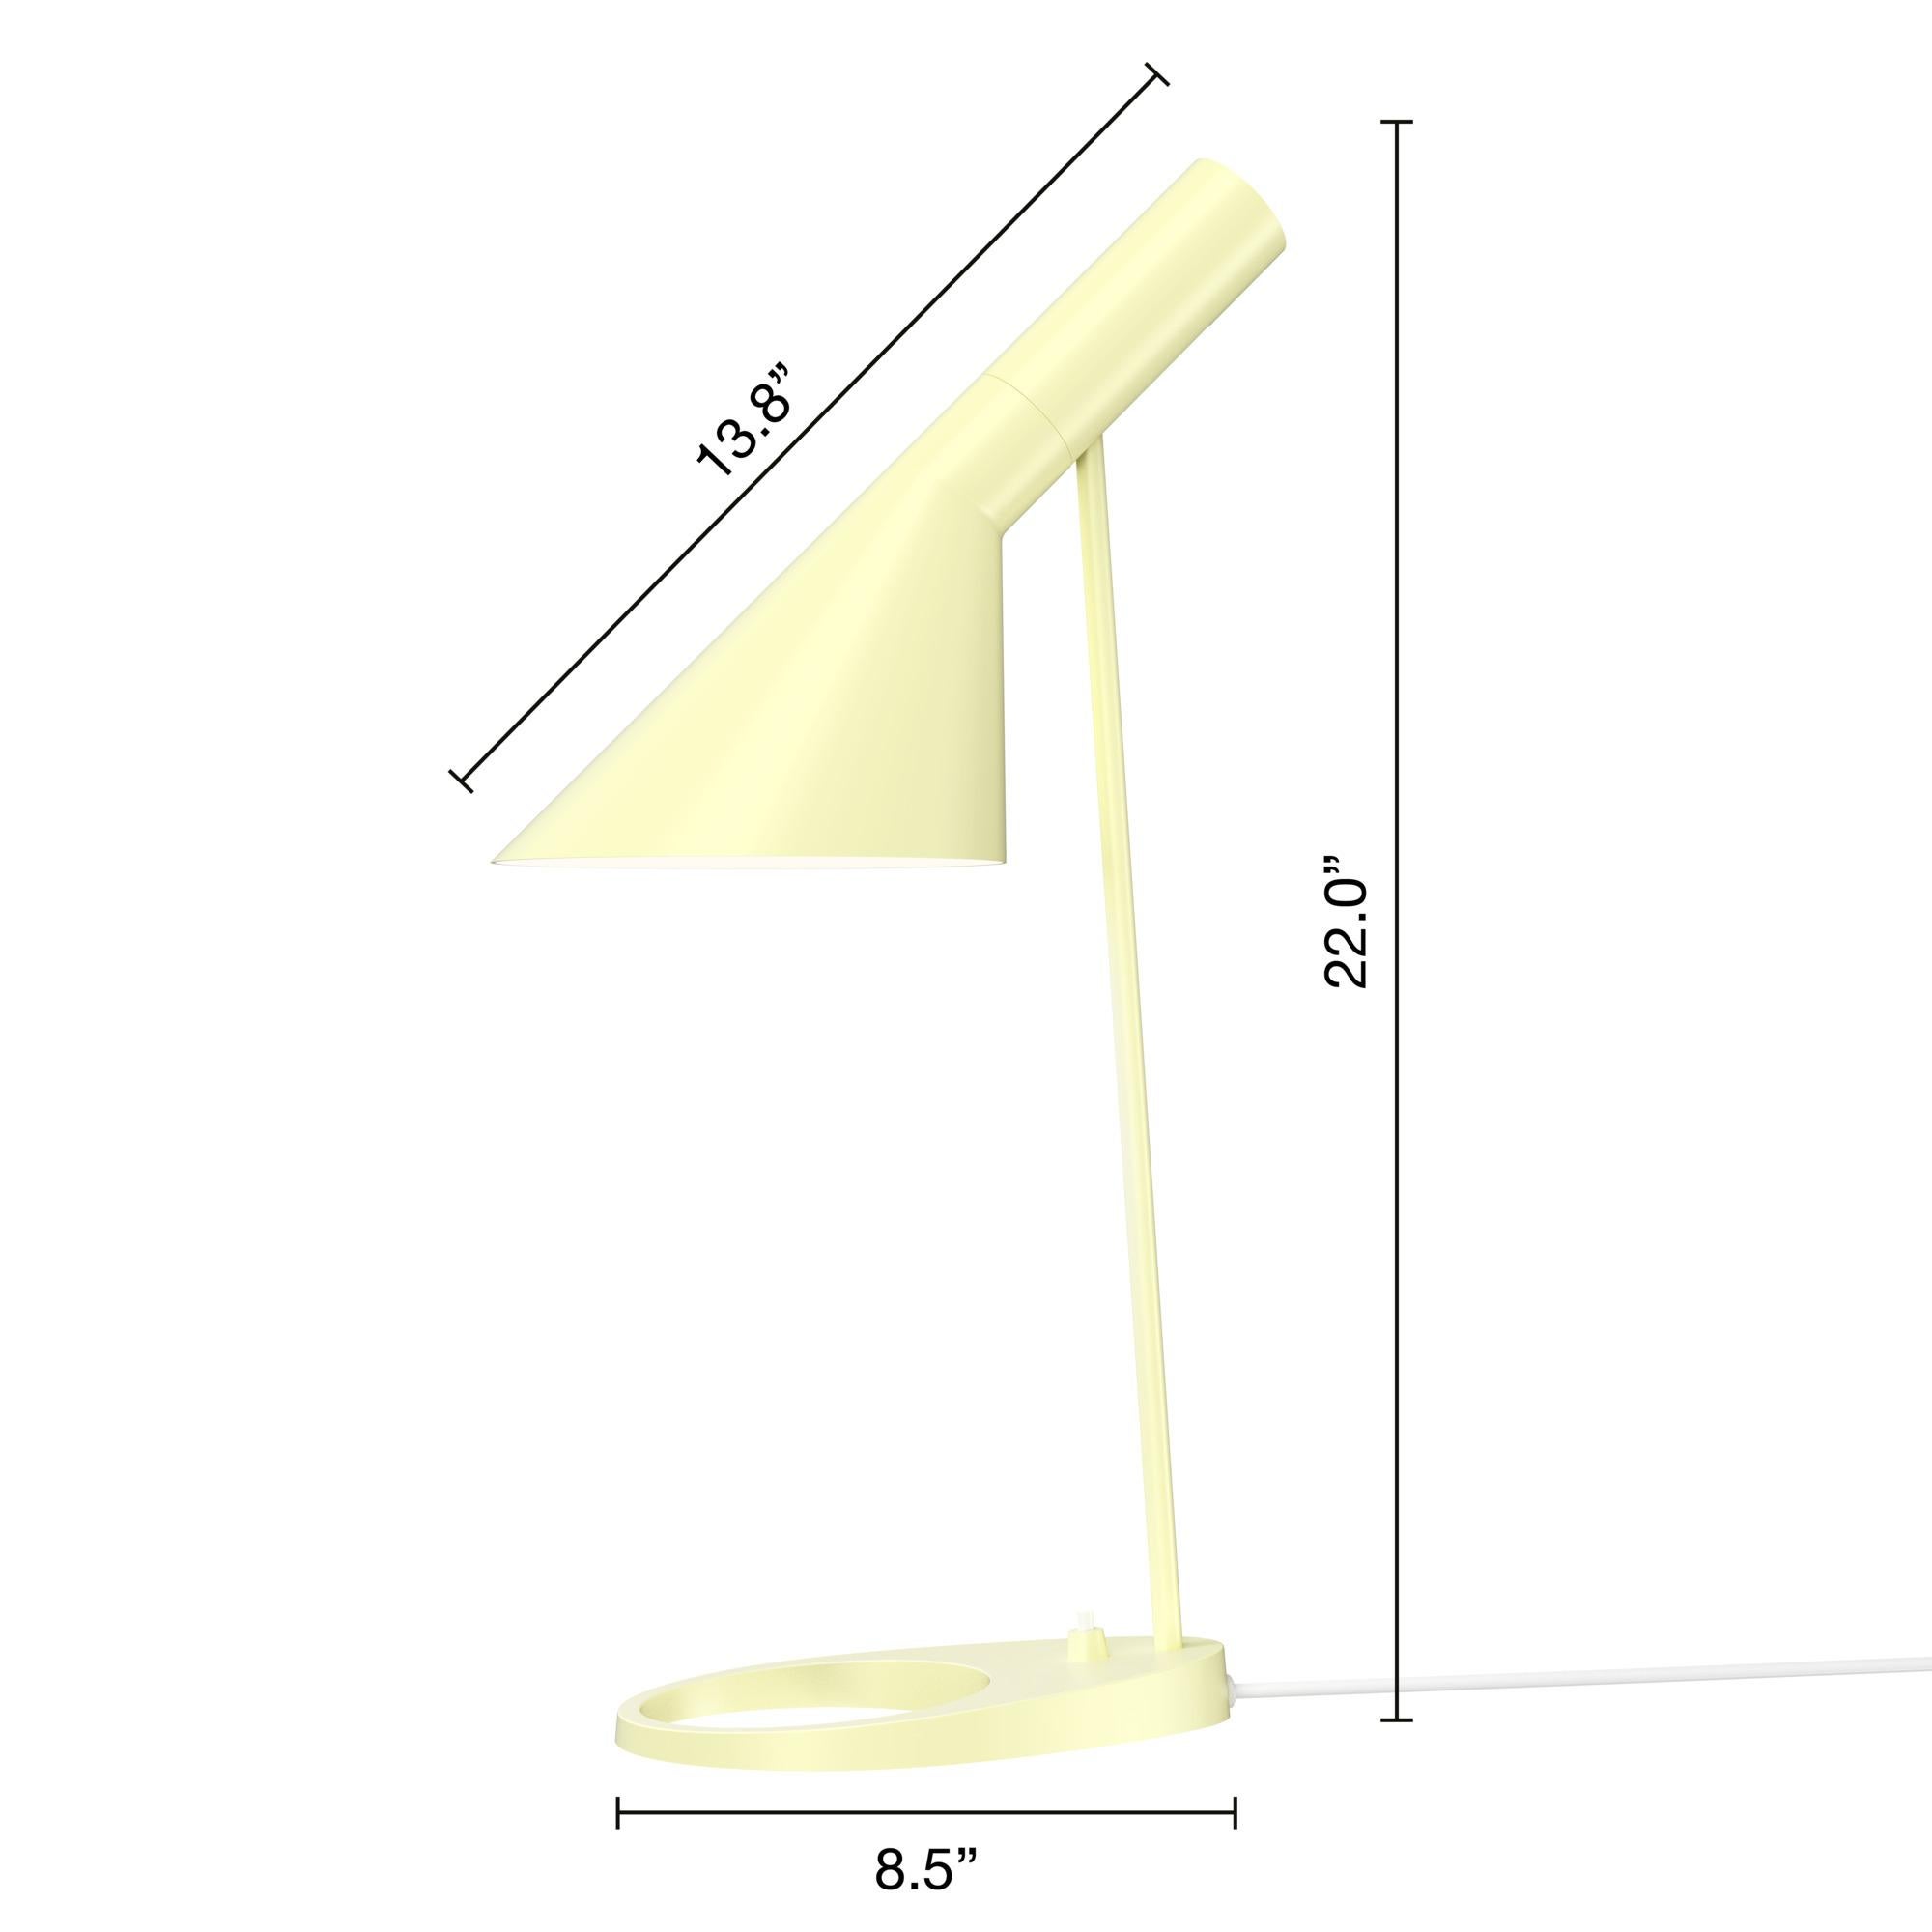 Lampe de table AJ de Arne Jacobsen en Soft Lemon pour Louis Poulsen. 

La série AJ faisait partie de la collection de luminaires que le célèbre designer danois Arne Jacobsen a créée pour le premier hôtel SAS Royal en 1957. Aujourd'hui, ses designs